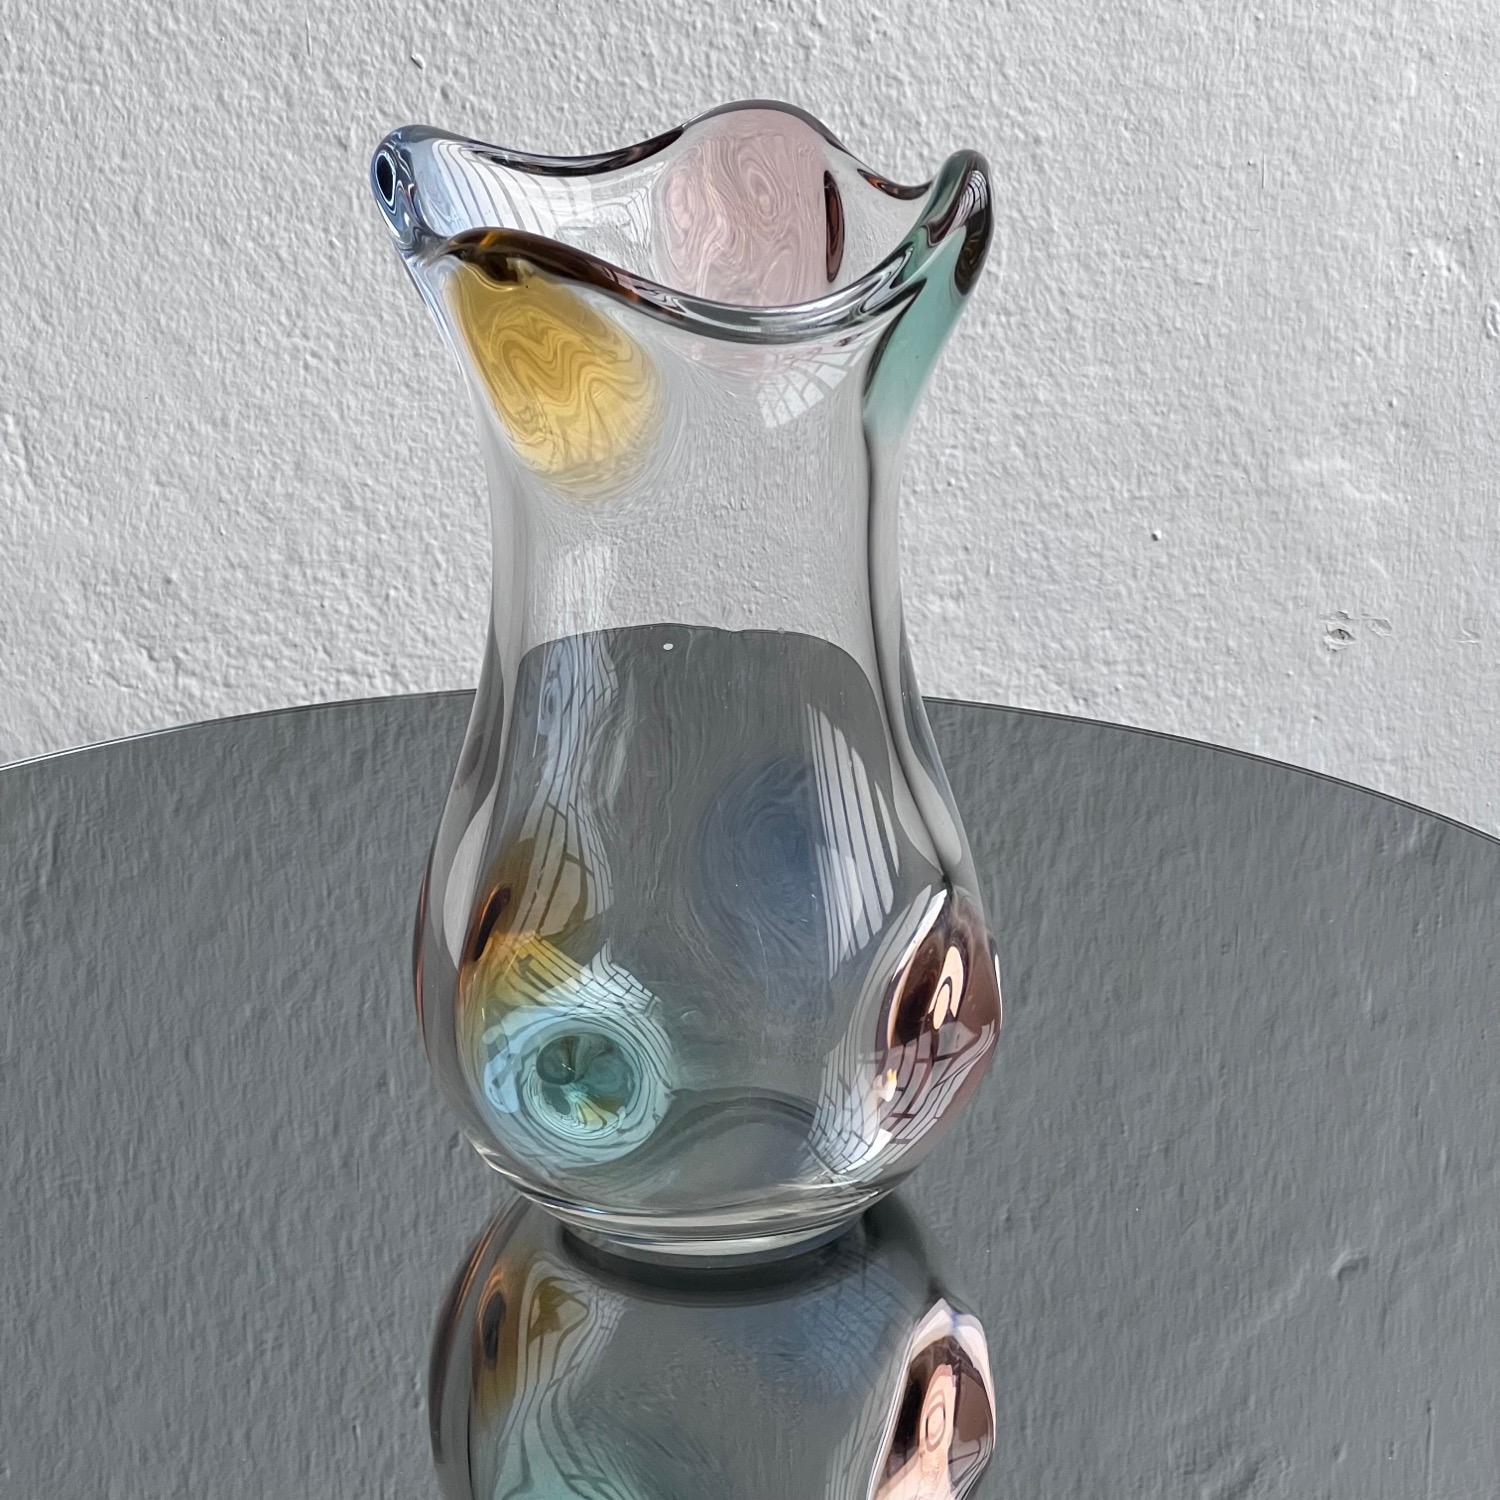 Diese große Vase aus den 1960er Jahren stammt aus der von Spinzi Milano kuratierten Auswahl an Vintage-Sammelgläsern und ist ein wunderbares Beispiel für italienisches Design.

Sie ist fließend, elegant und farbenfroh, fast skulptural in ihrer